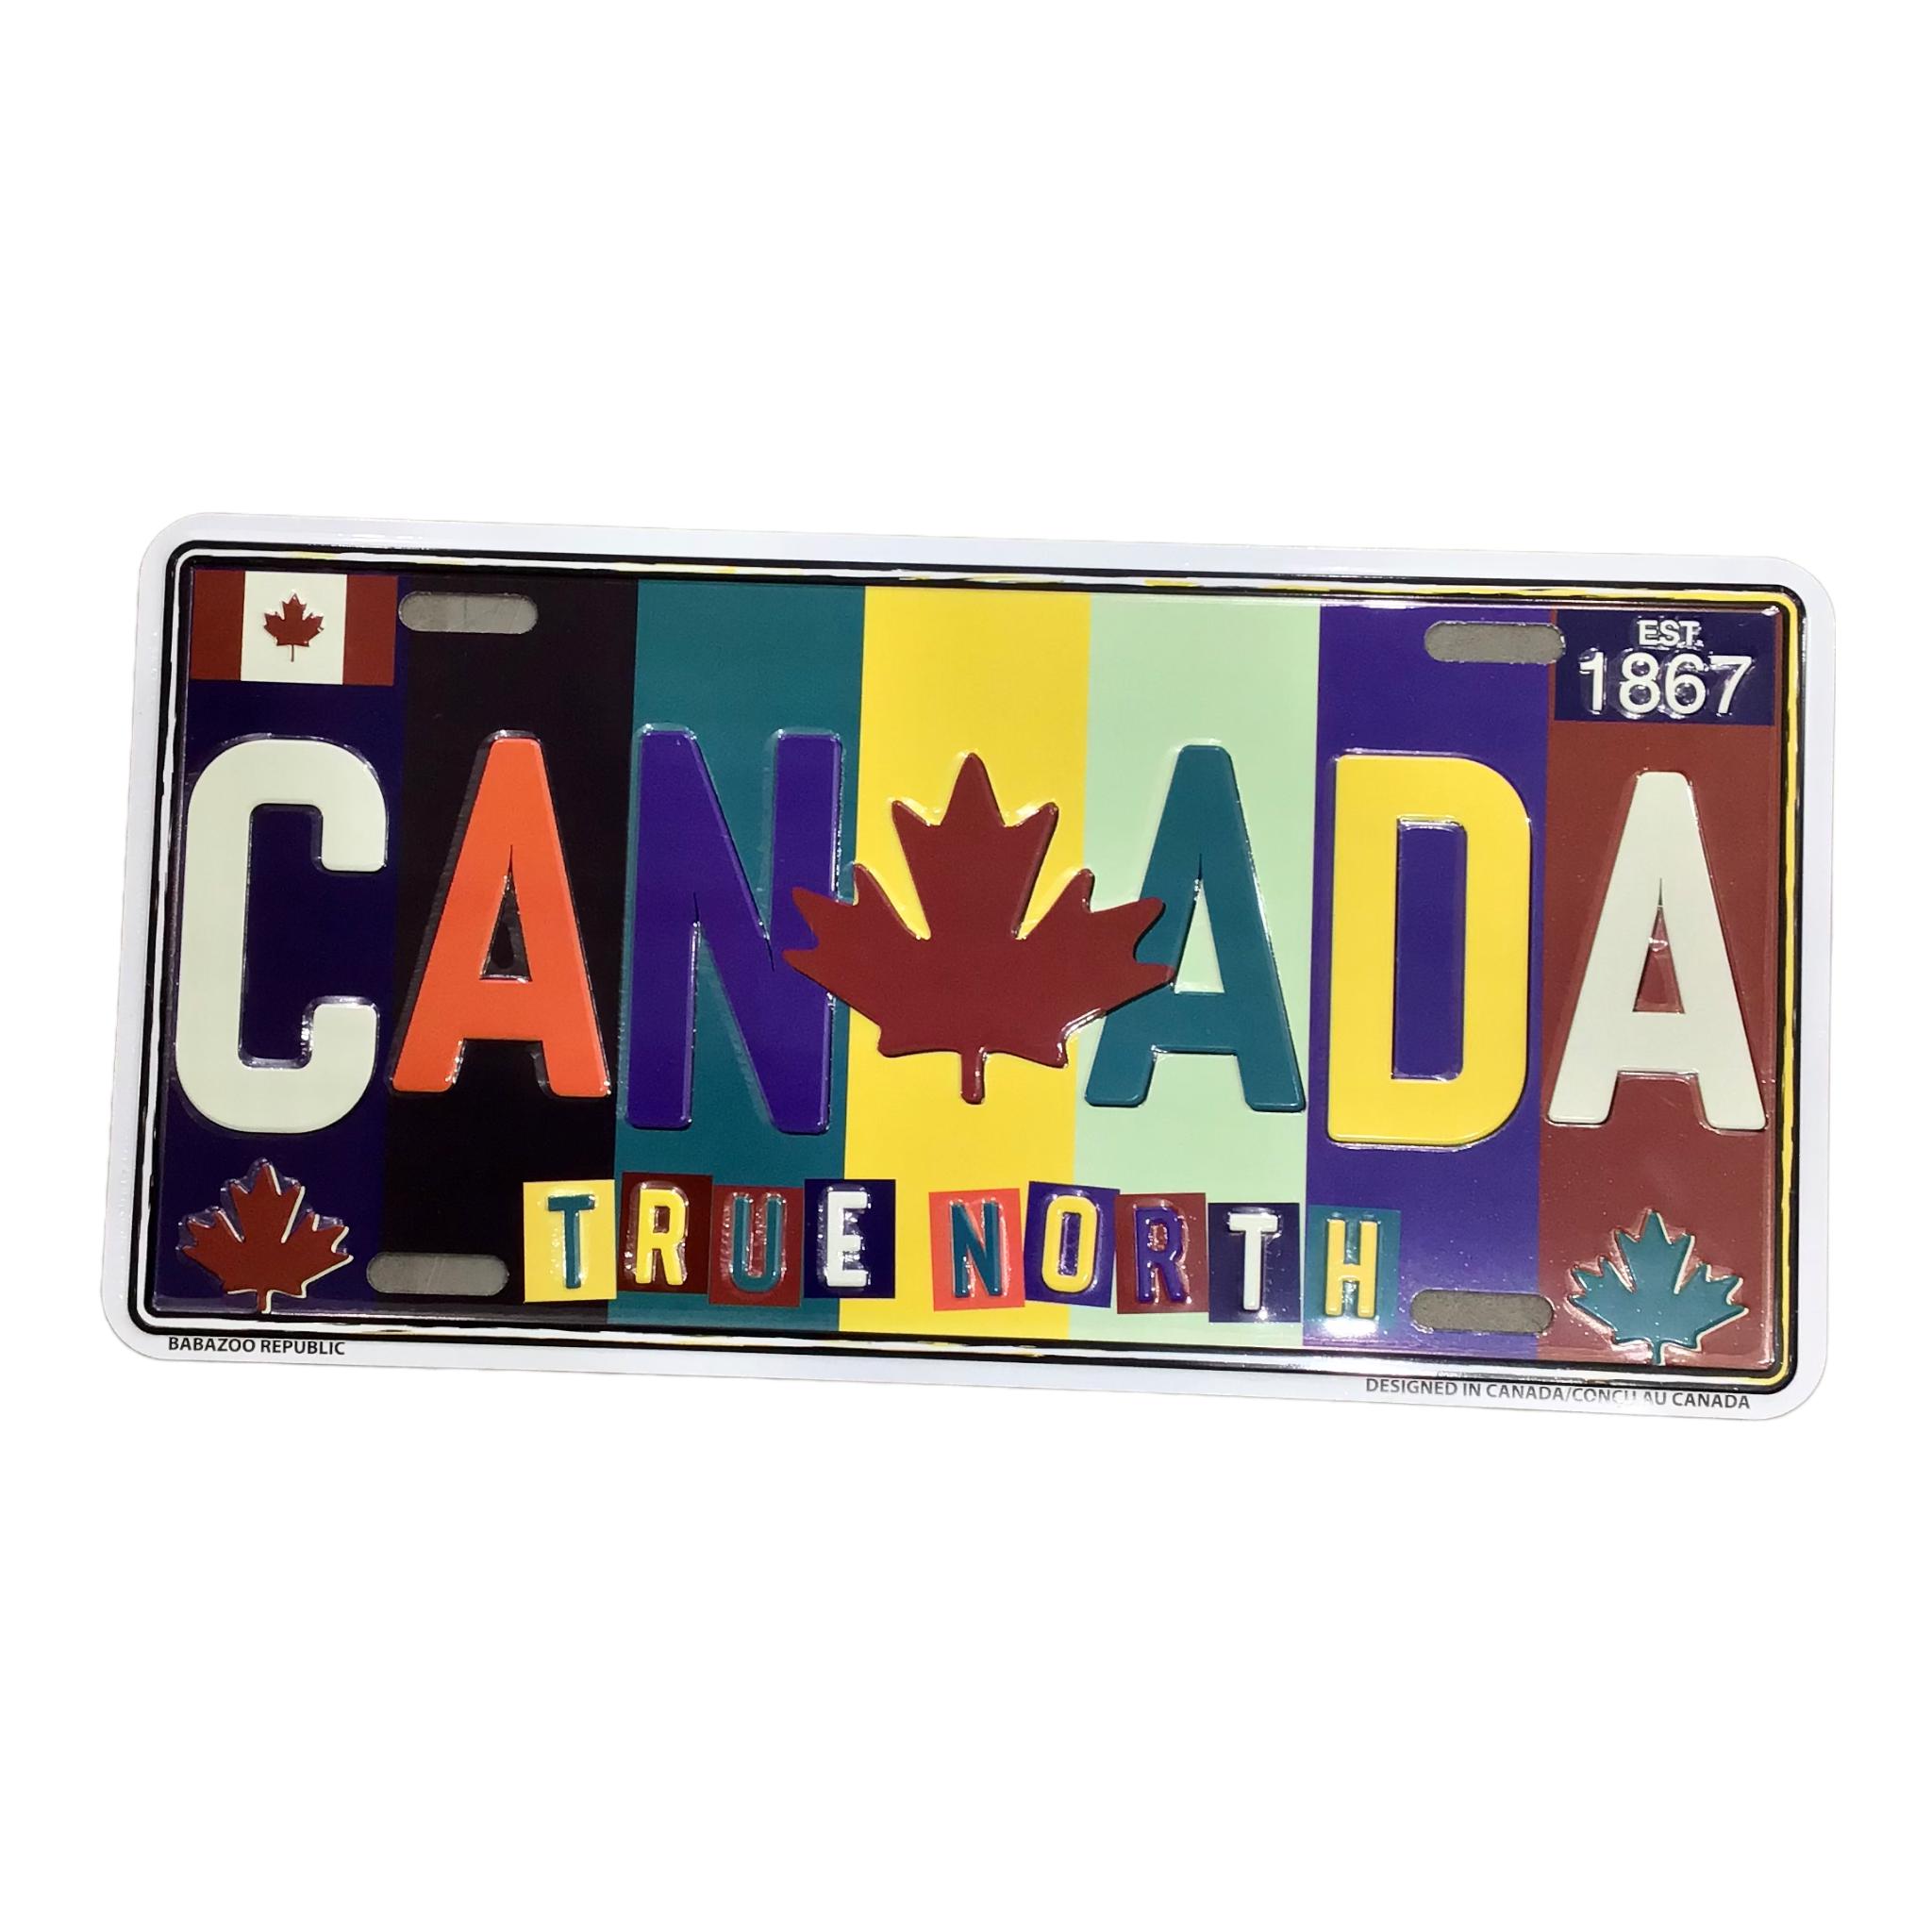 MONTRÉAL CANADA Customized Quebec Car Plaque Size Novelty Souvenir Gift Plate Multi-Colours